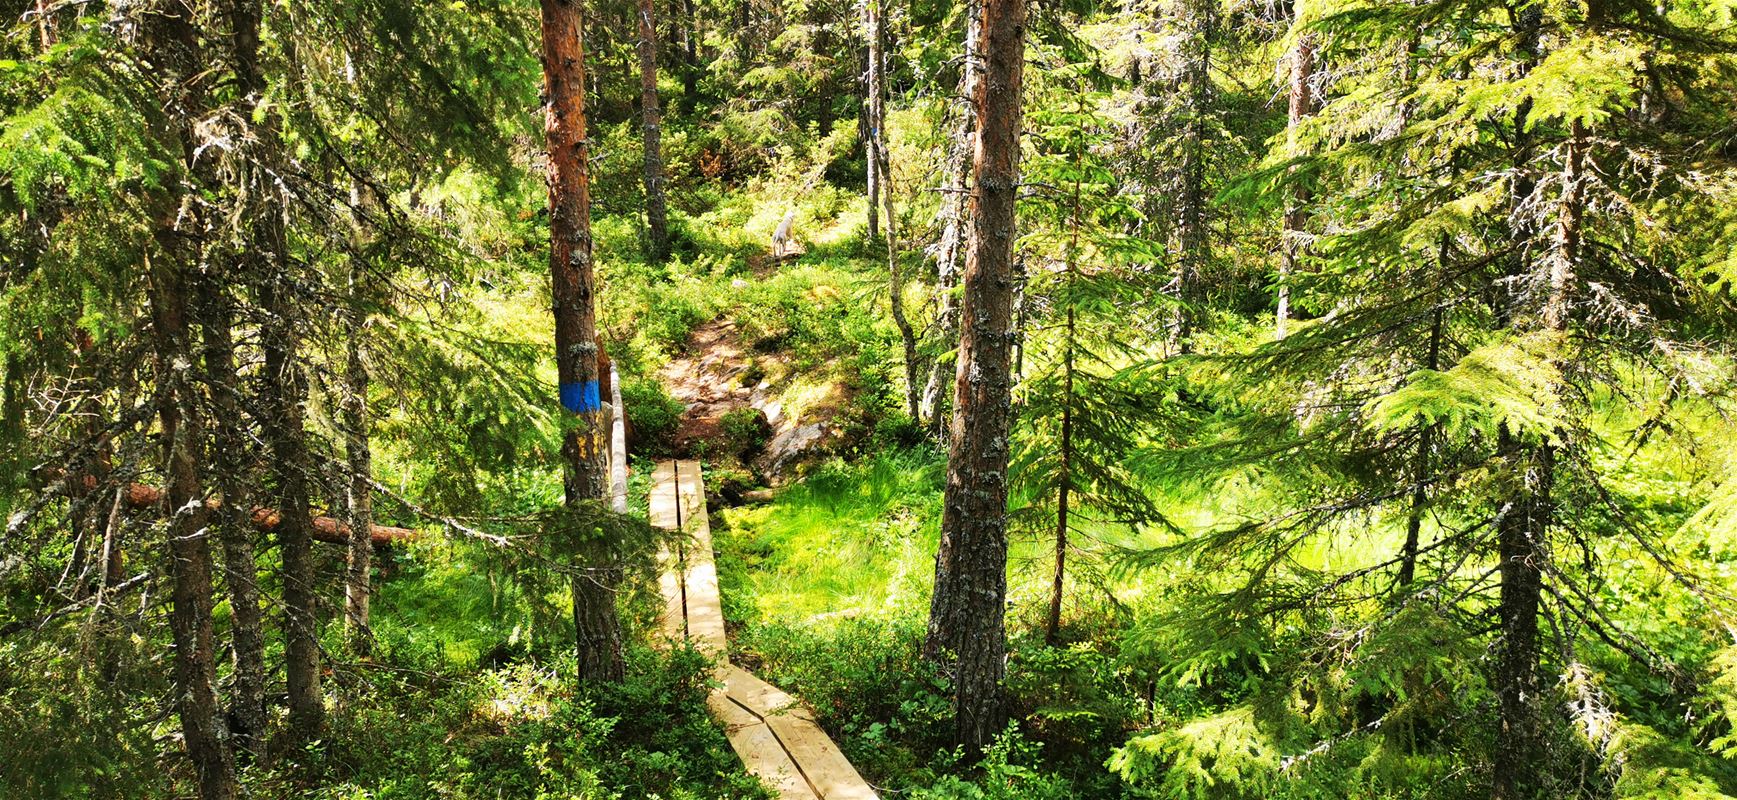 Footbridge in forest.